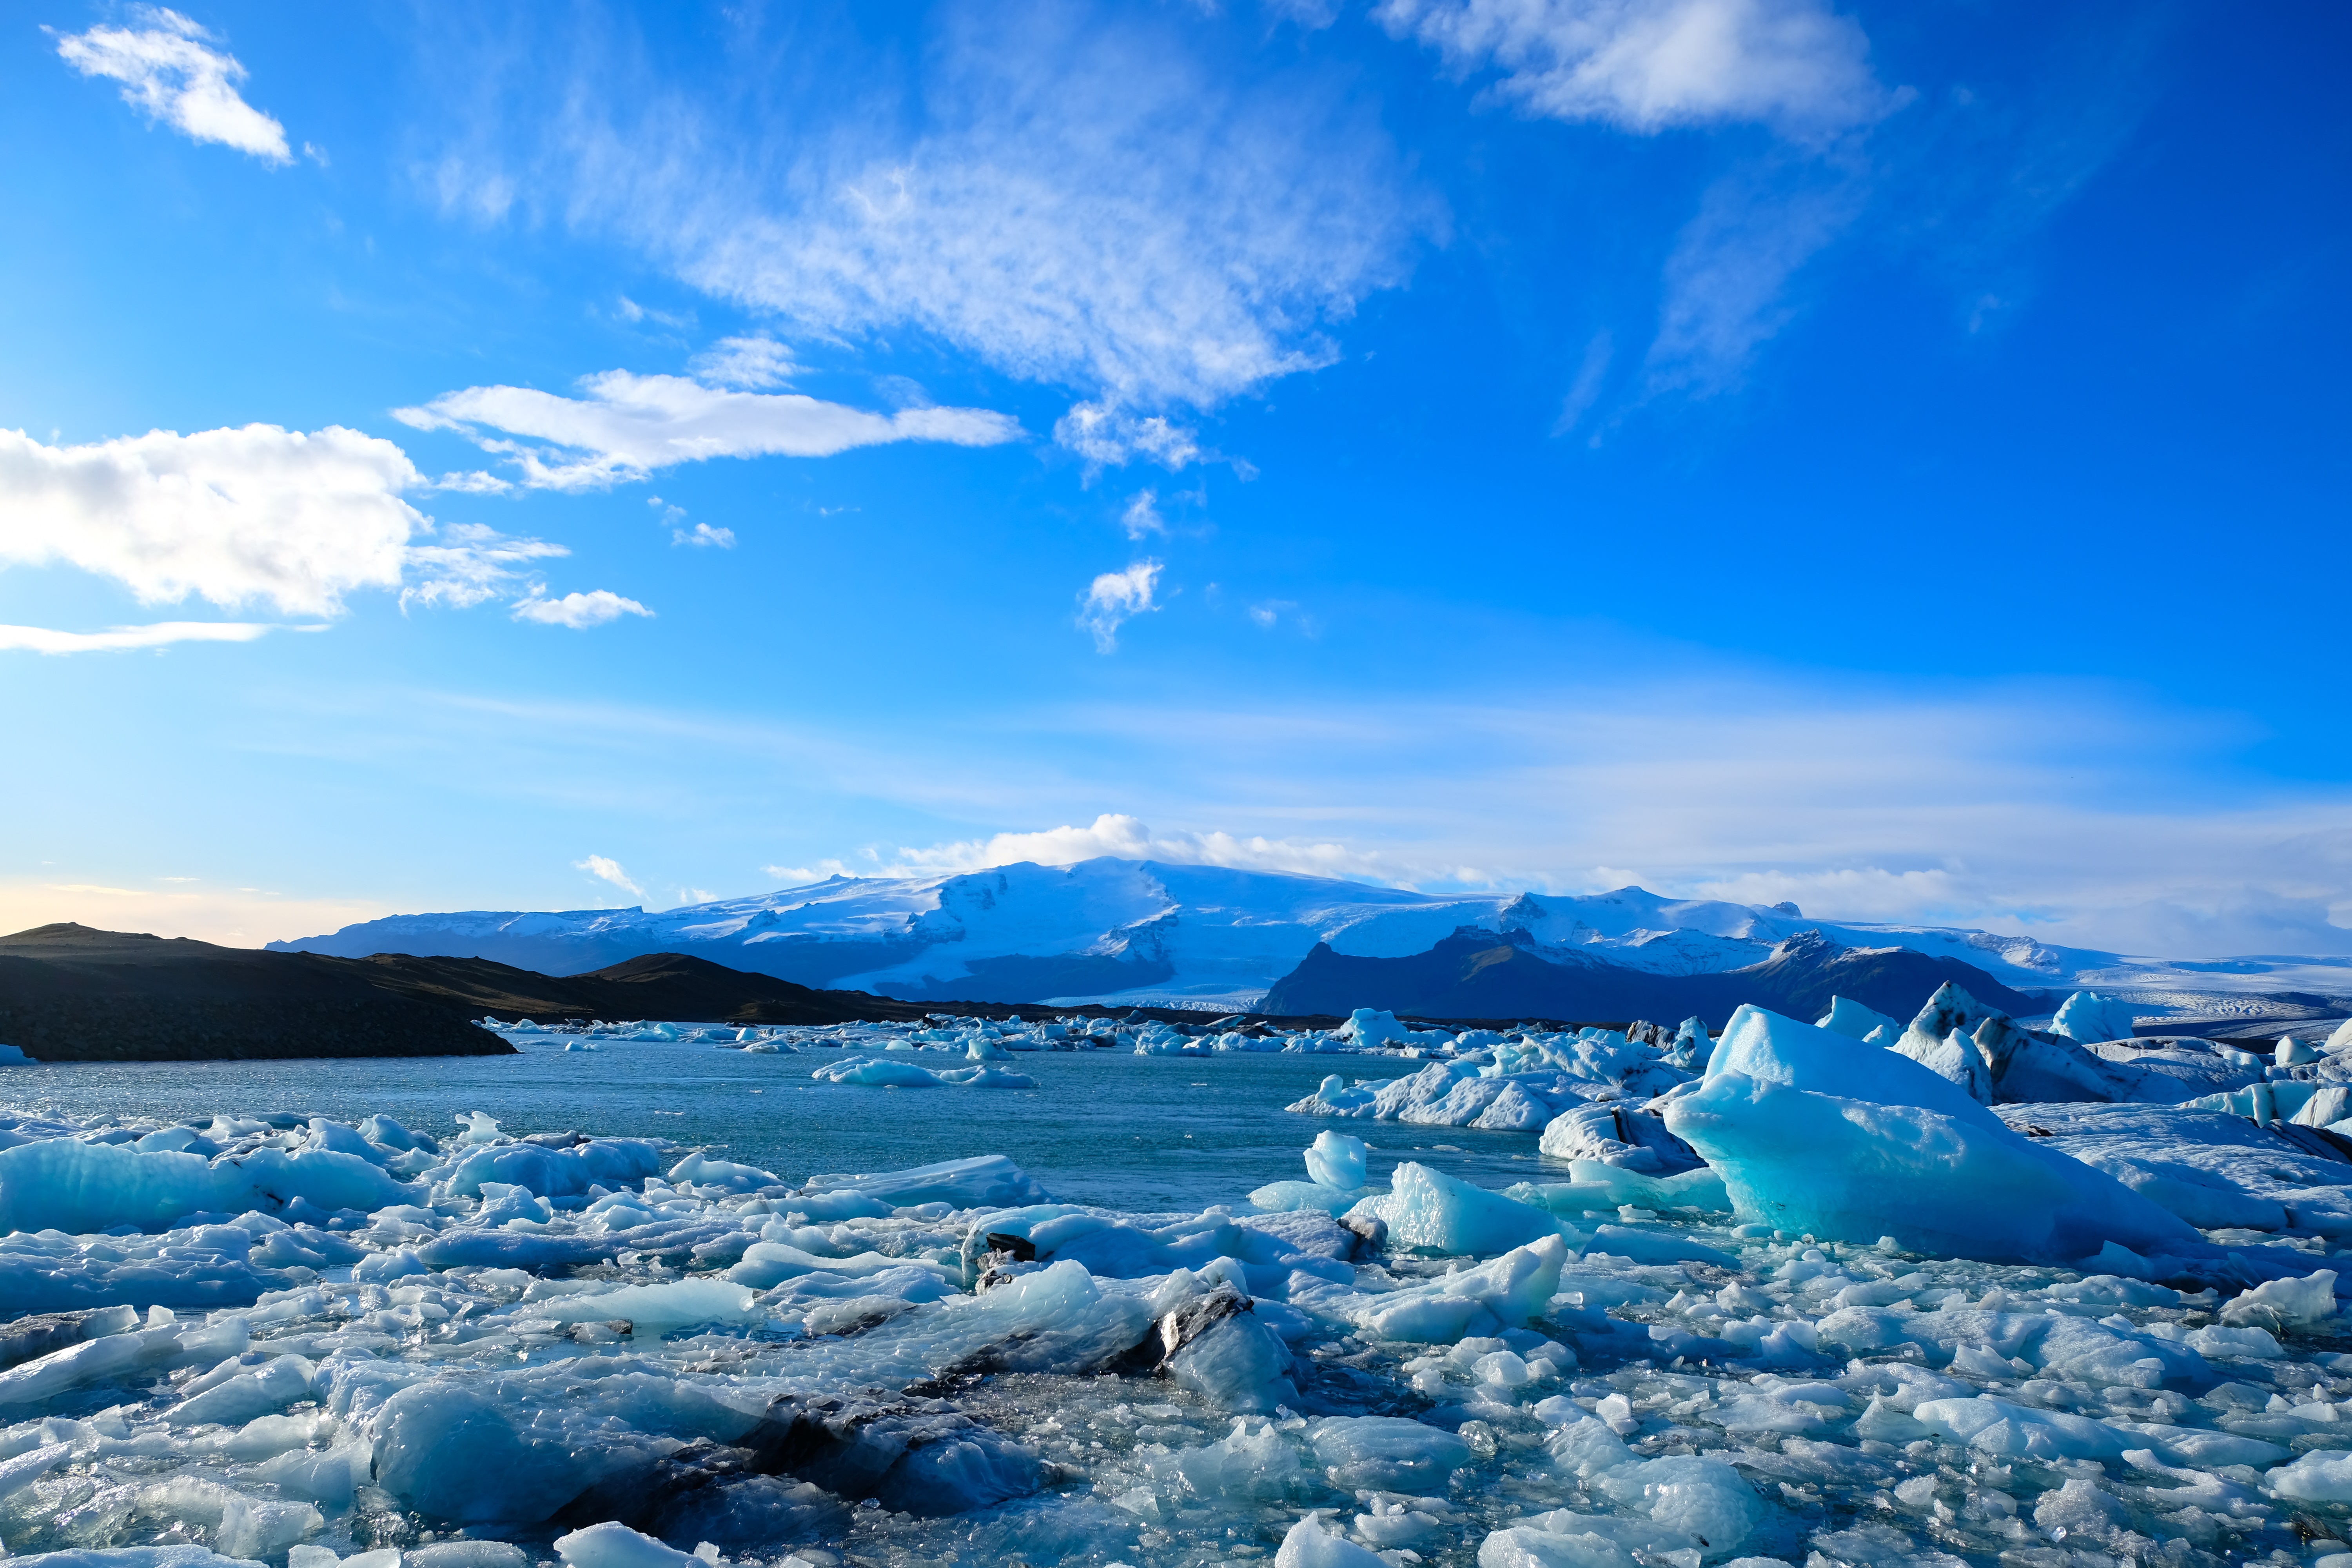 Показать ледовитый океан. Арктика Северный Ледовитый океан. Исландия Северный Ледовитый океан. Арктика и моря Северного Ледовитого океана. Северный Ледовитый океан лед море.